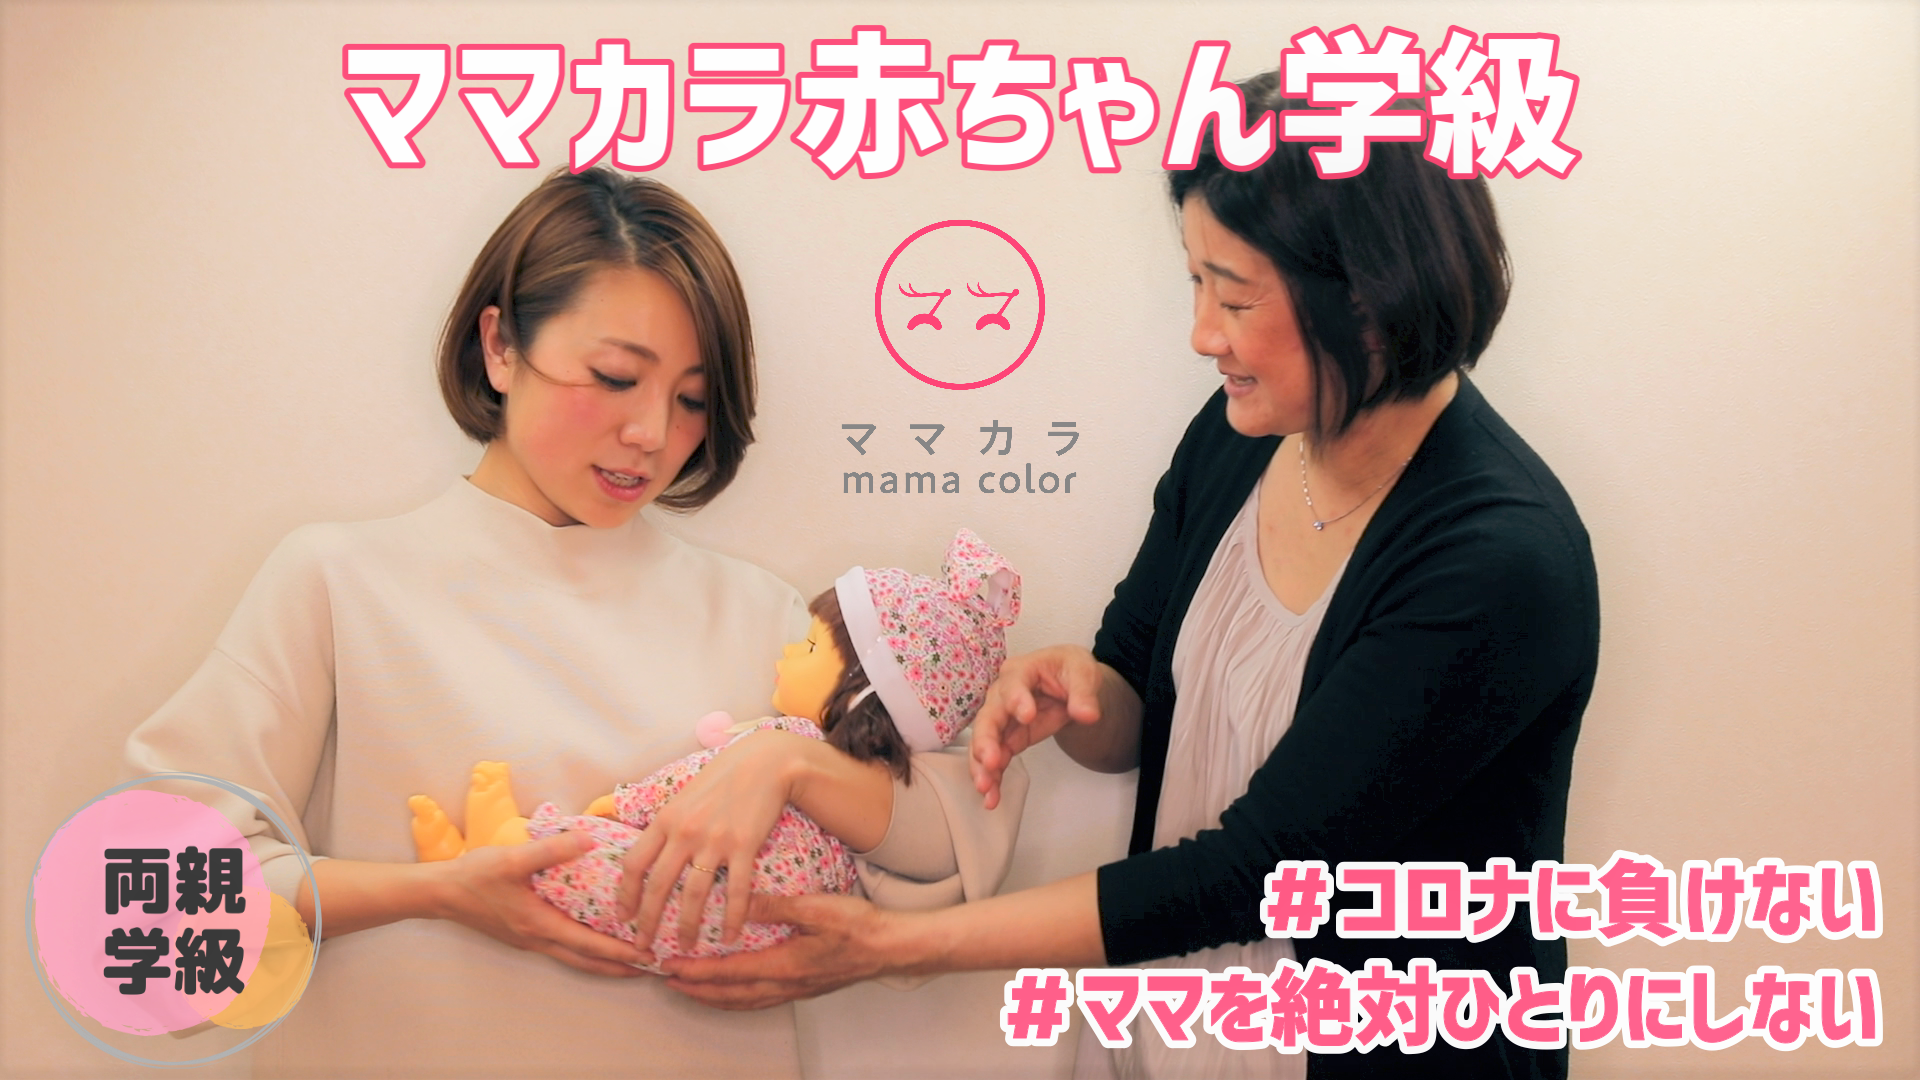 NHK「ニュースシブ５時」で「ママカラ赤ちゃん学級」YouTubeをご紹介いただきました。